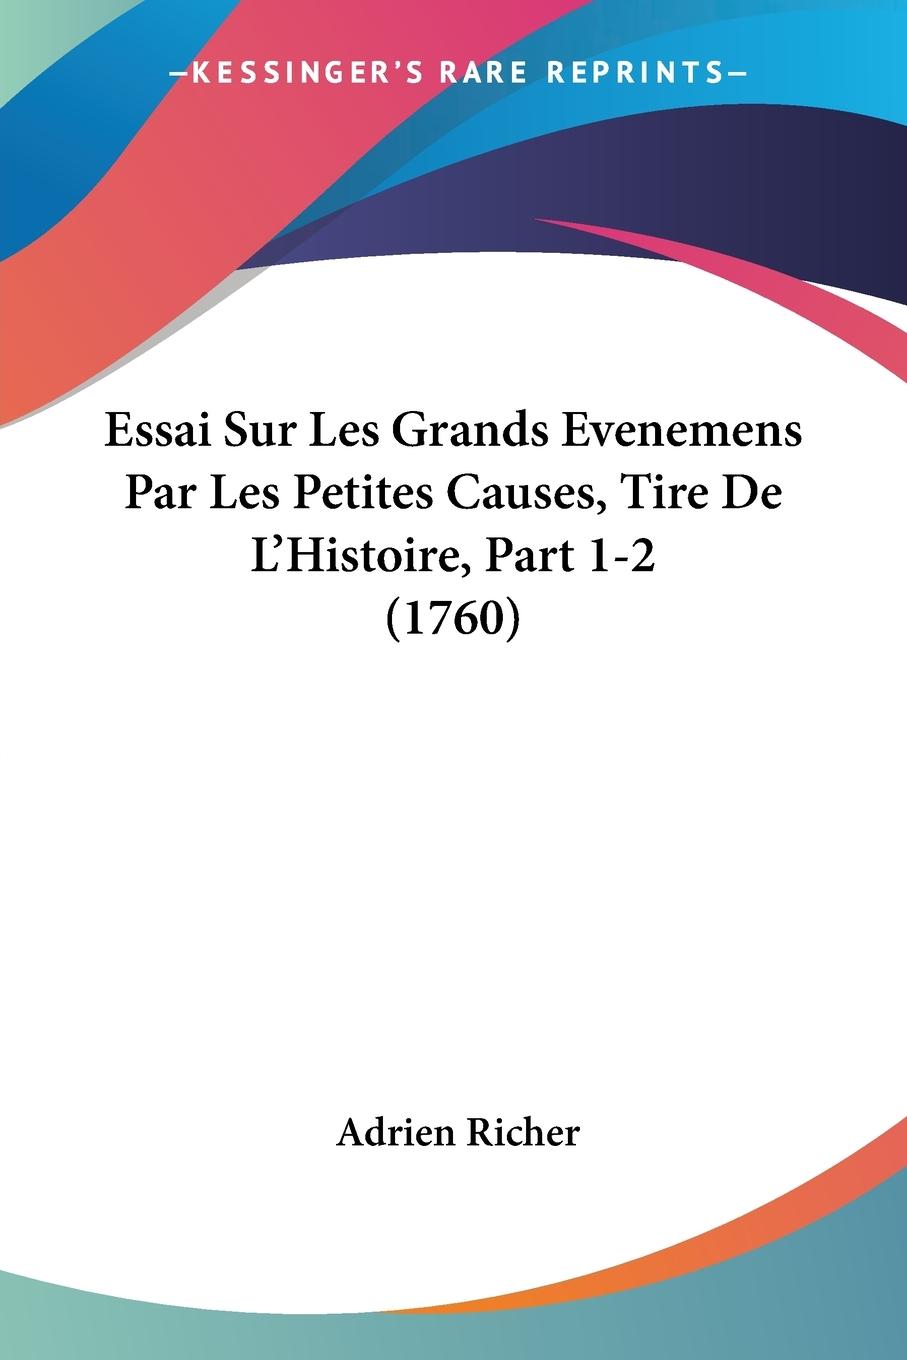 Essai Sur Les Grands Evenemens Par Les Petites Causes, Tire De L Histoire, Part 1-2 (1760) - Richer, Adrien